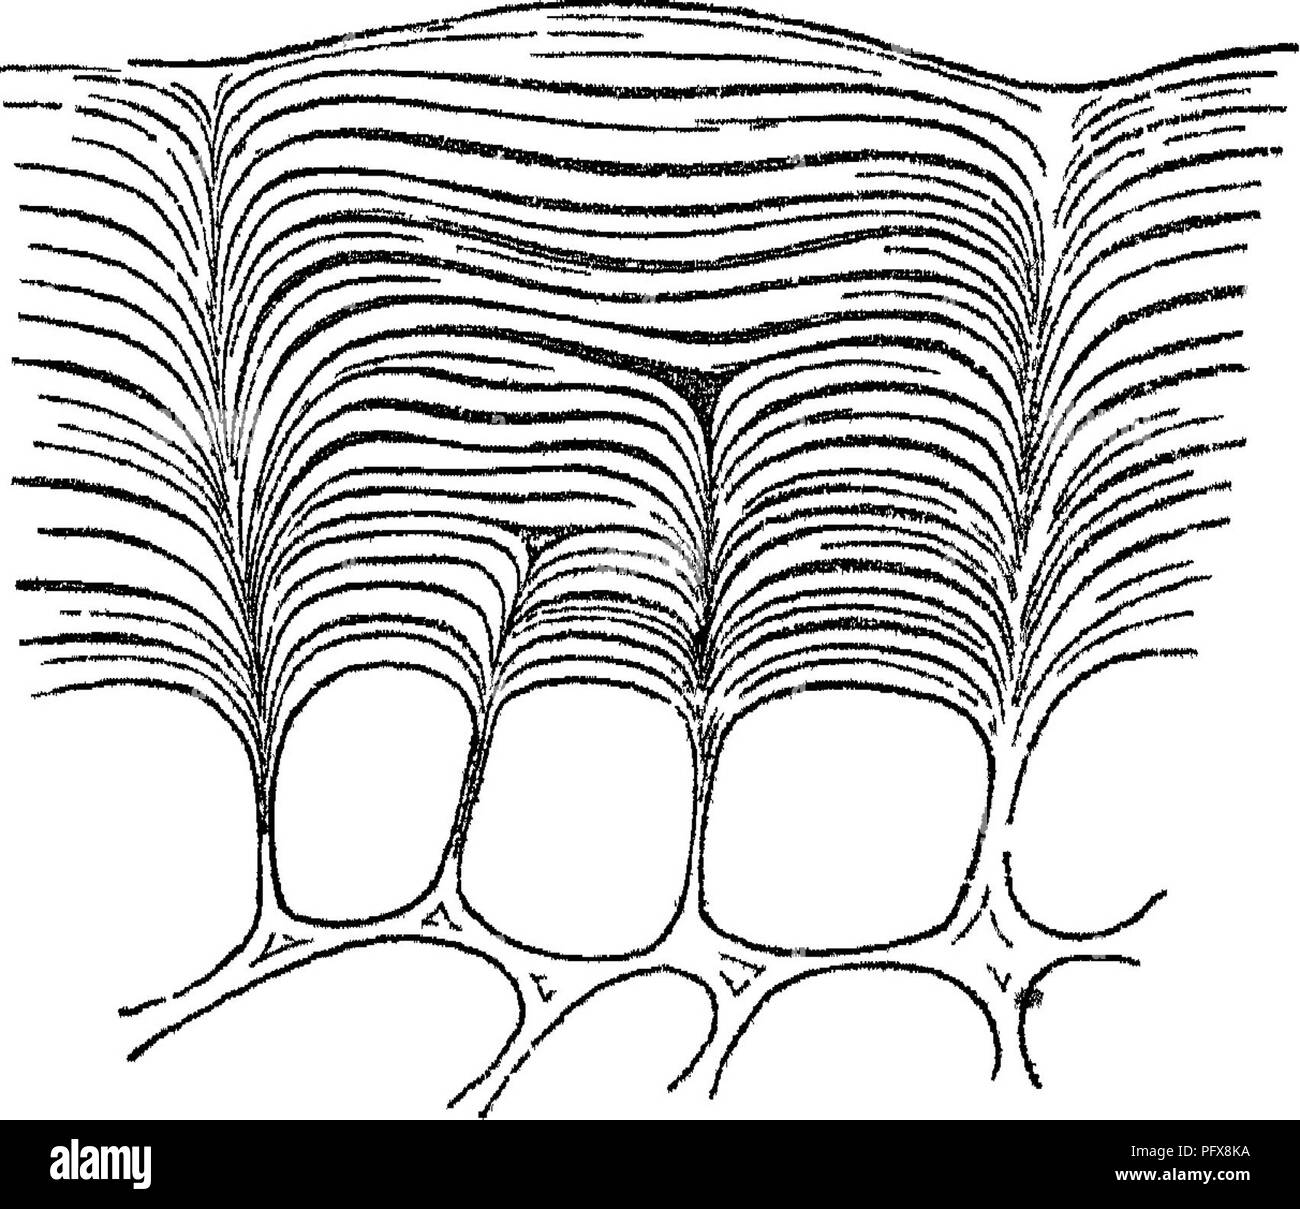 . Principi di anatomia e fisiologia della cellula vegetale. Impianto di cellule e tessuti. la parete invio exliibitb tliese ilowu proprietà per un certo ileptlij in modo tale che uno strato (fig 4:0, a) è così formato, che è più {vistosamente distinto dal subja- cento ceils, e quando questi ultimi sono stati disciolti in sulphiu'ic, acido resta dietro come un continuo e apparentemente homogene- unità organizzative membrana. Poiché Ad. Brongniait (''Ami. des. Nat, jSer,," § i, 65) aveva dis- coperto che una membrana continua, non composta di cellule, da lui chiamati cuticula, potrebbero essere separate dalla macerazione da esterno Foto Stock